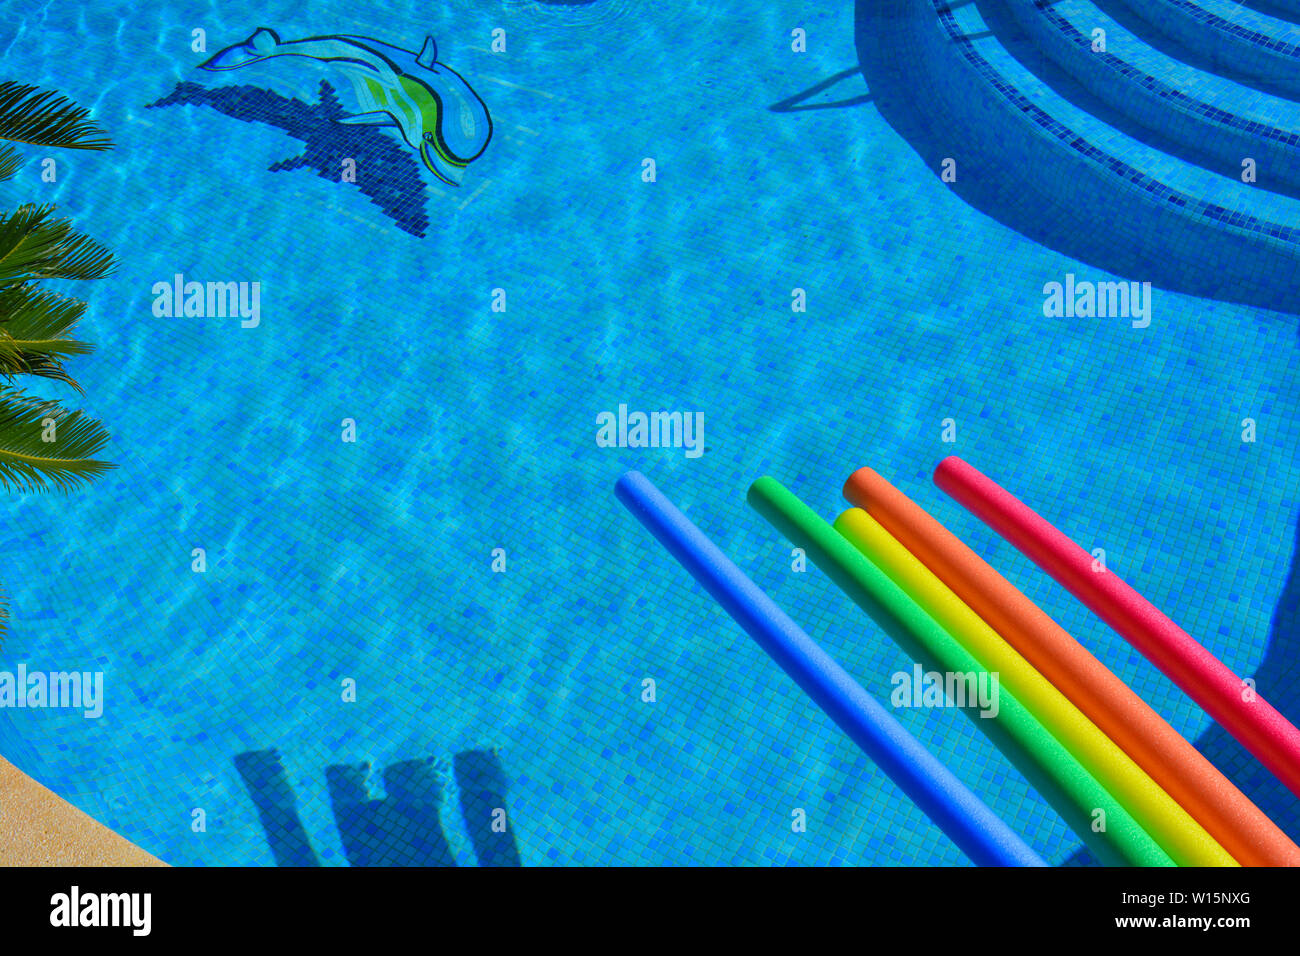 Piscine de couleur vive sur les nouilles, au bord de la piscine vue d'angle élevée avec baquois, dolphin mosaic et étapes Banque D'Images